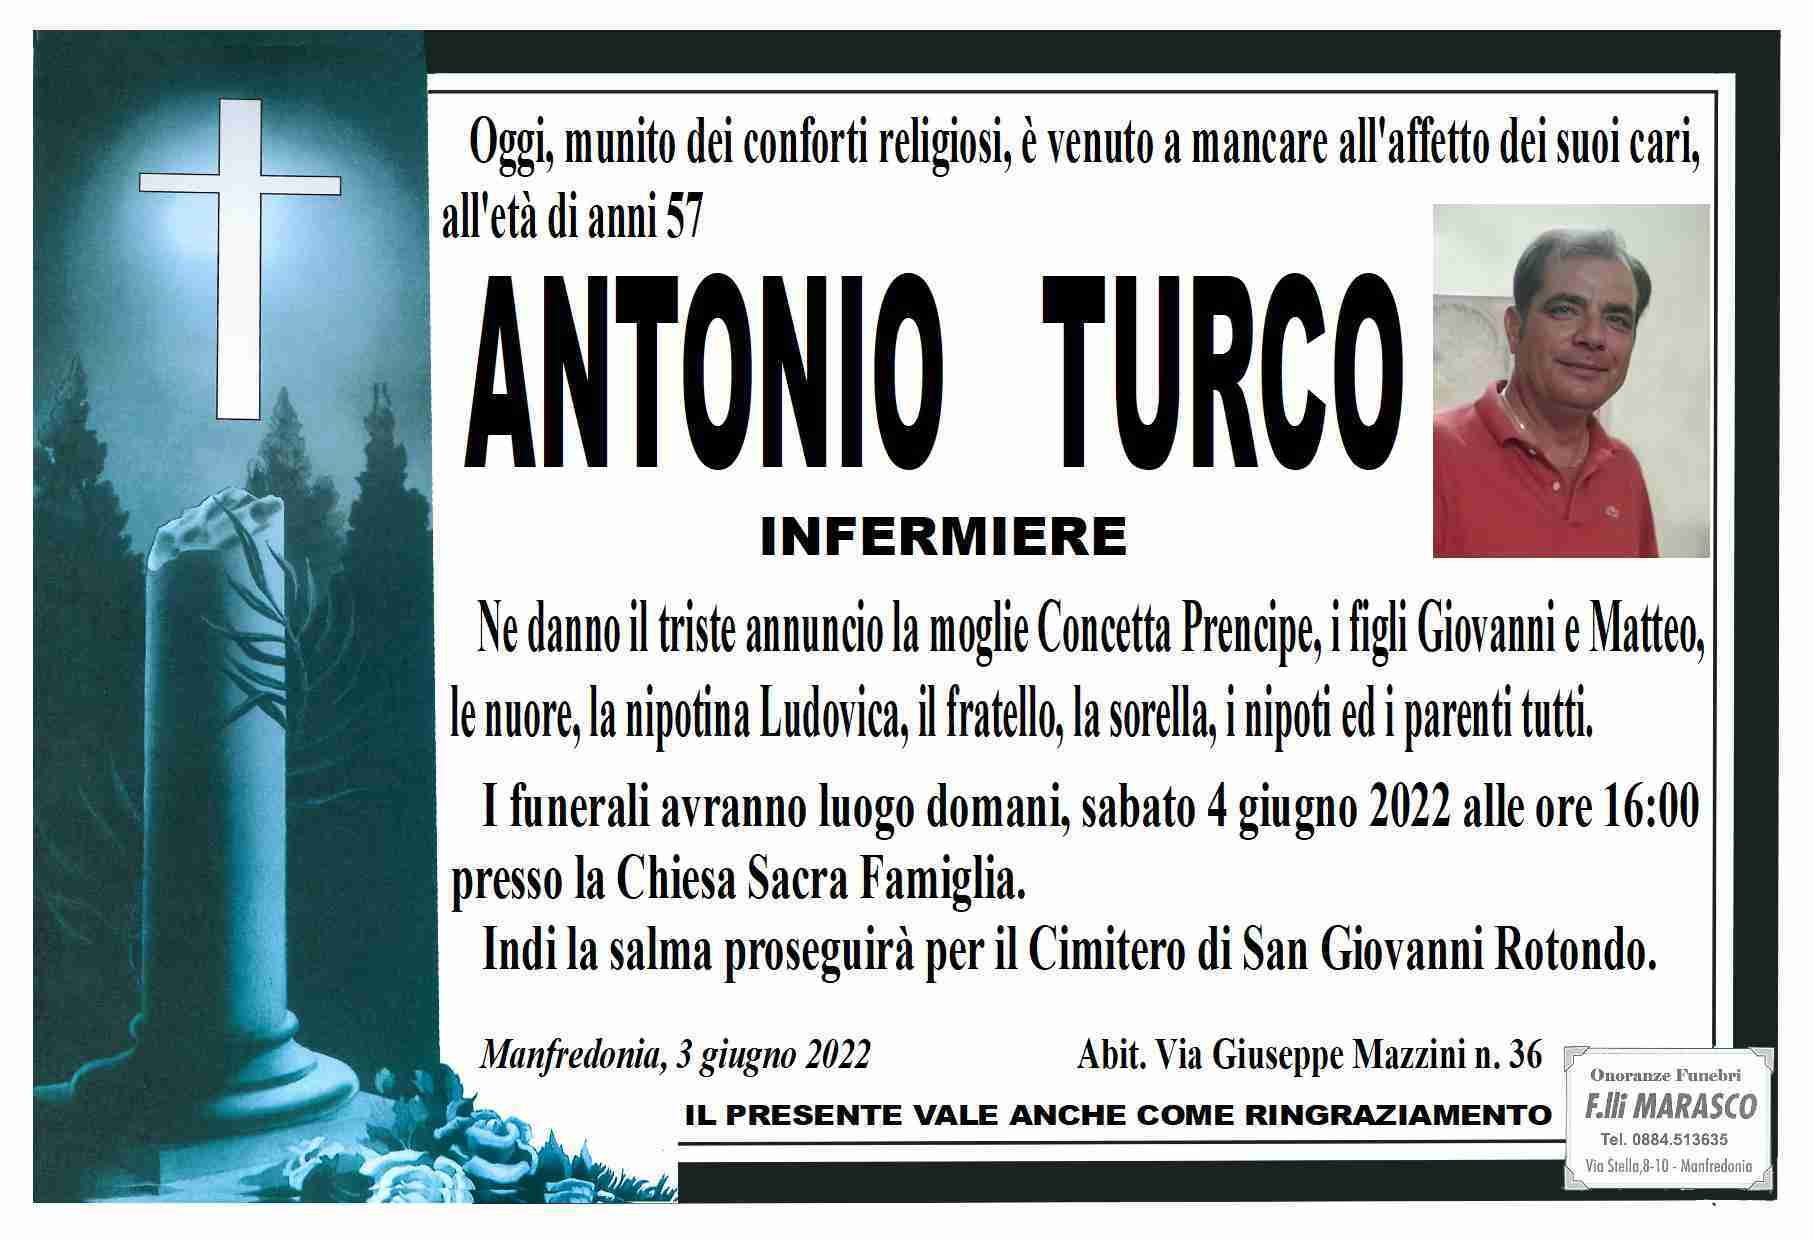 Antonio Turco